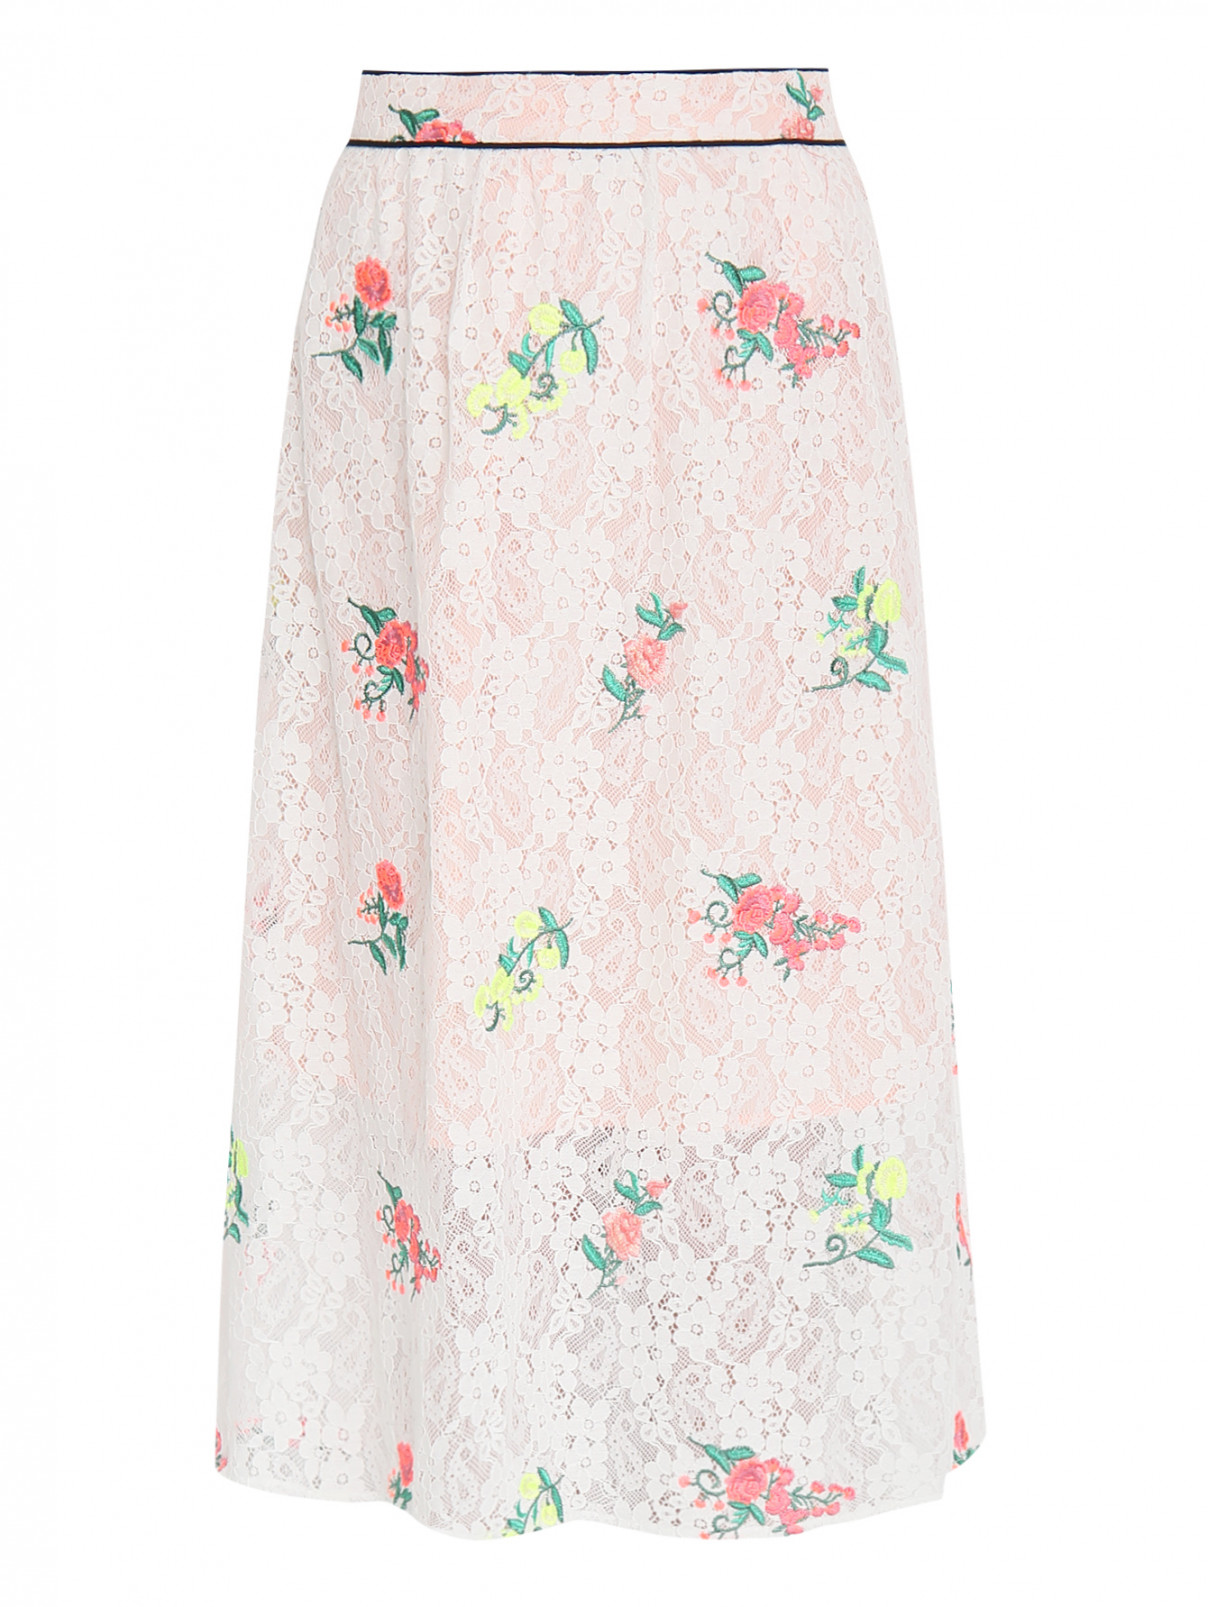 Кружевная юбка-миди декорированная вышивкой Manoush  –  Общий вид  – Цвет:  Белый